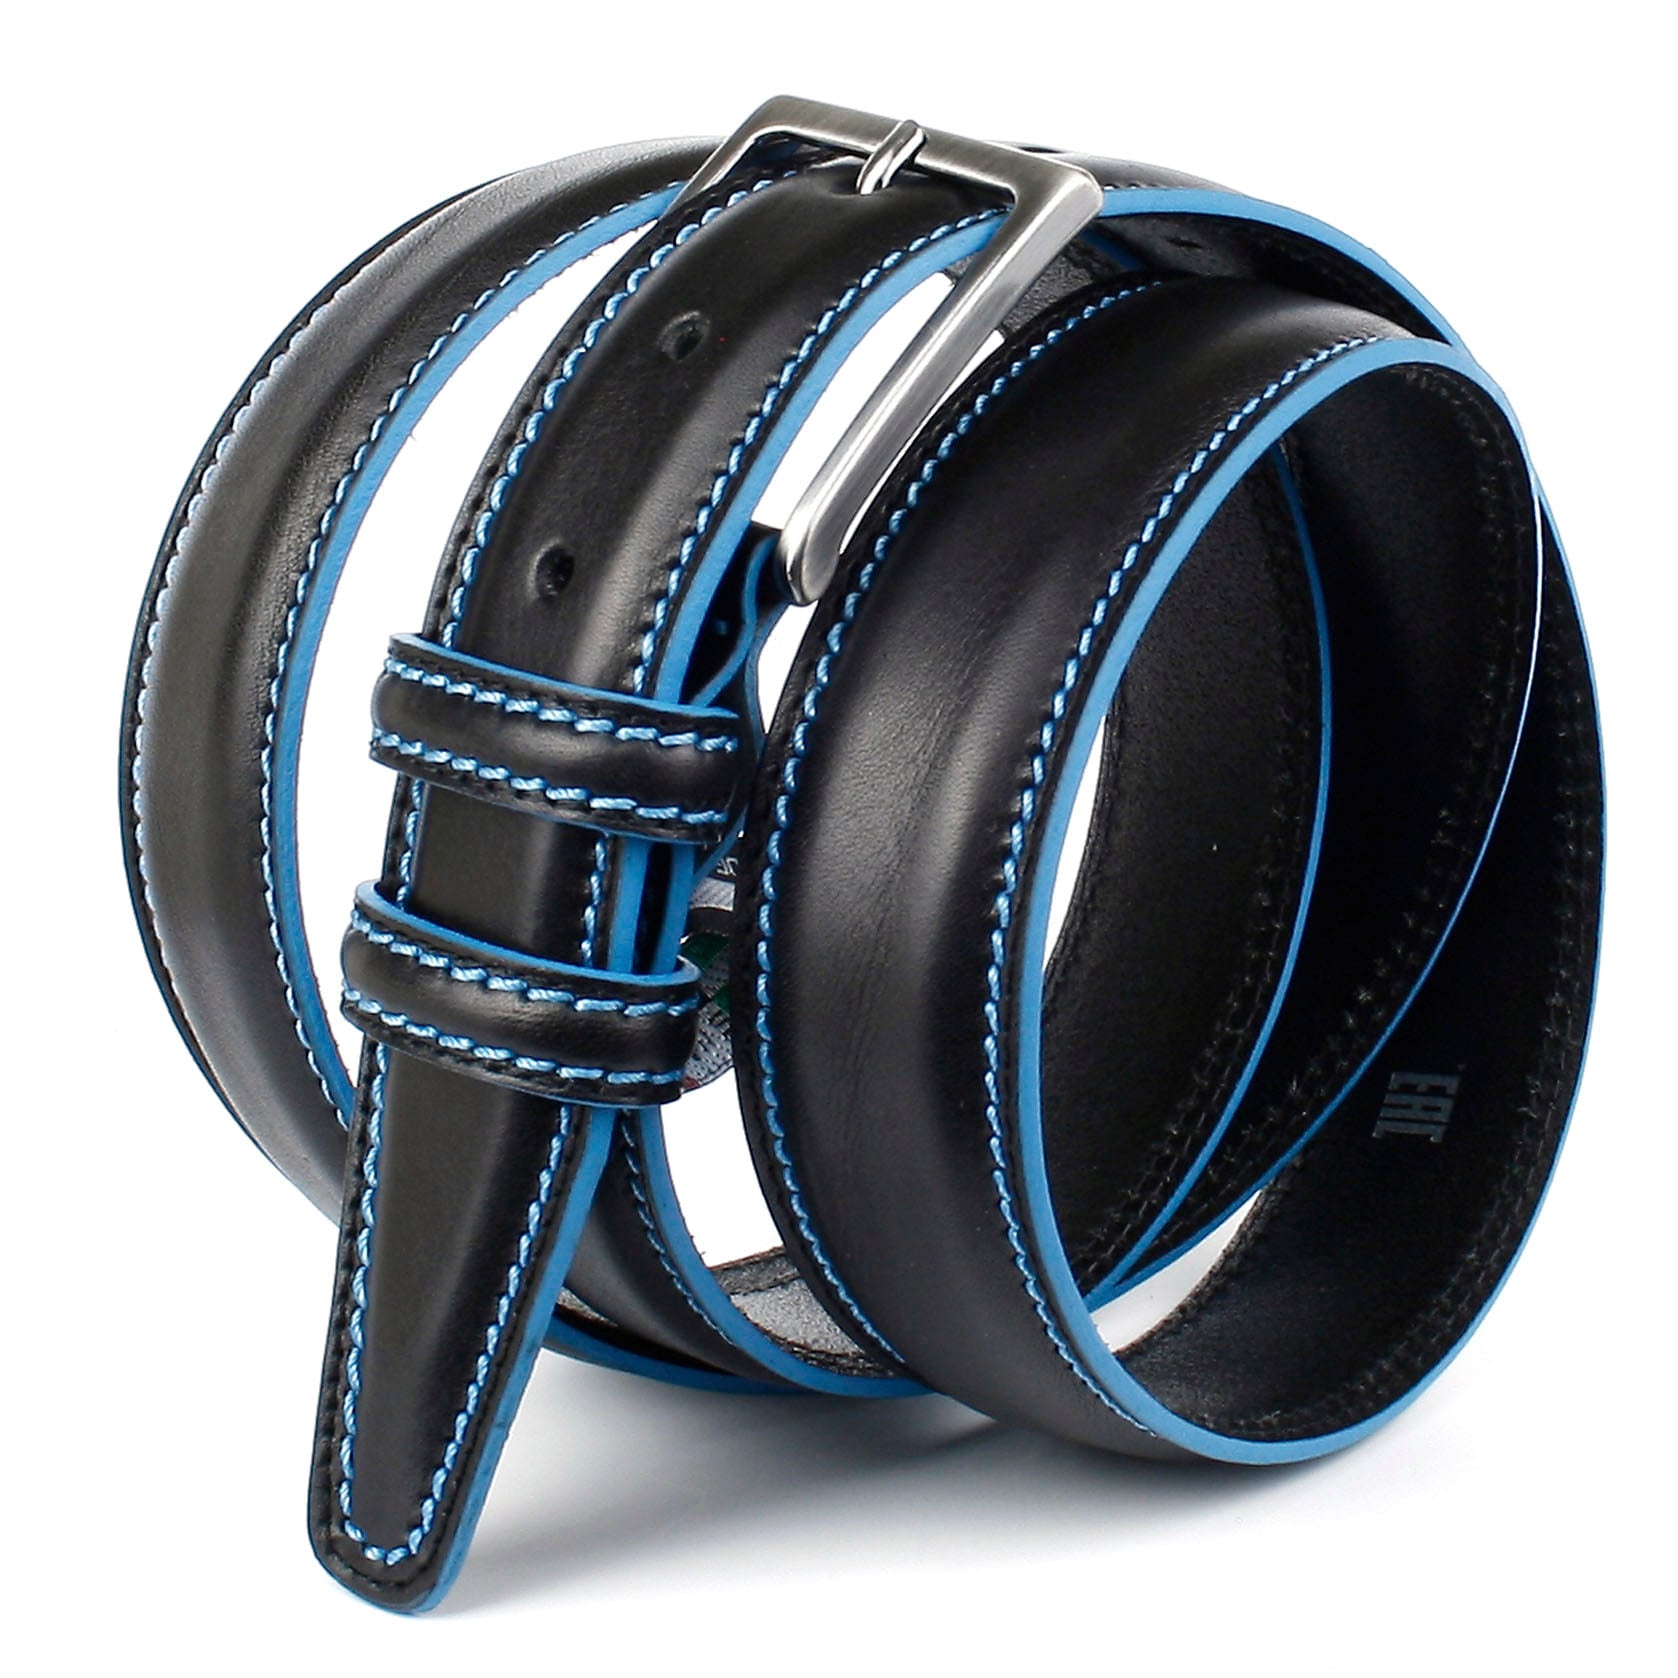 Anthoni Crown Stitching in Ledergürtel, Kontrast OTTO shoppen bei mit online blau